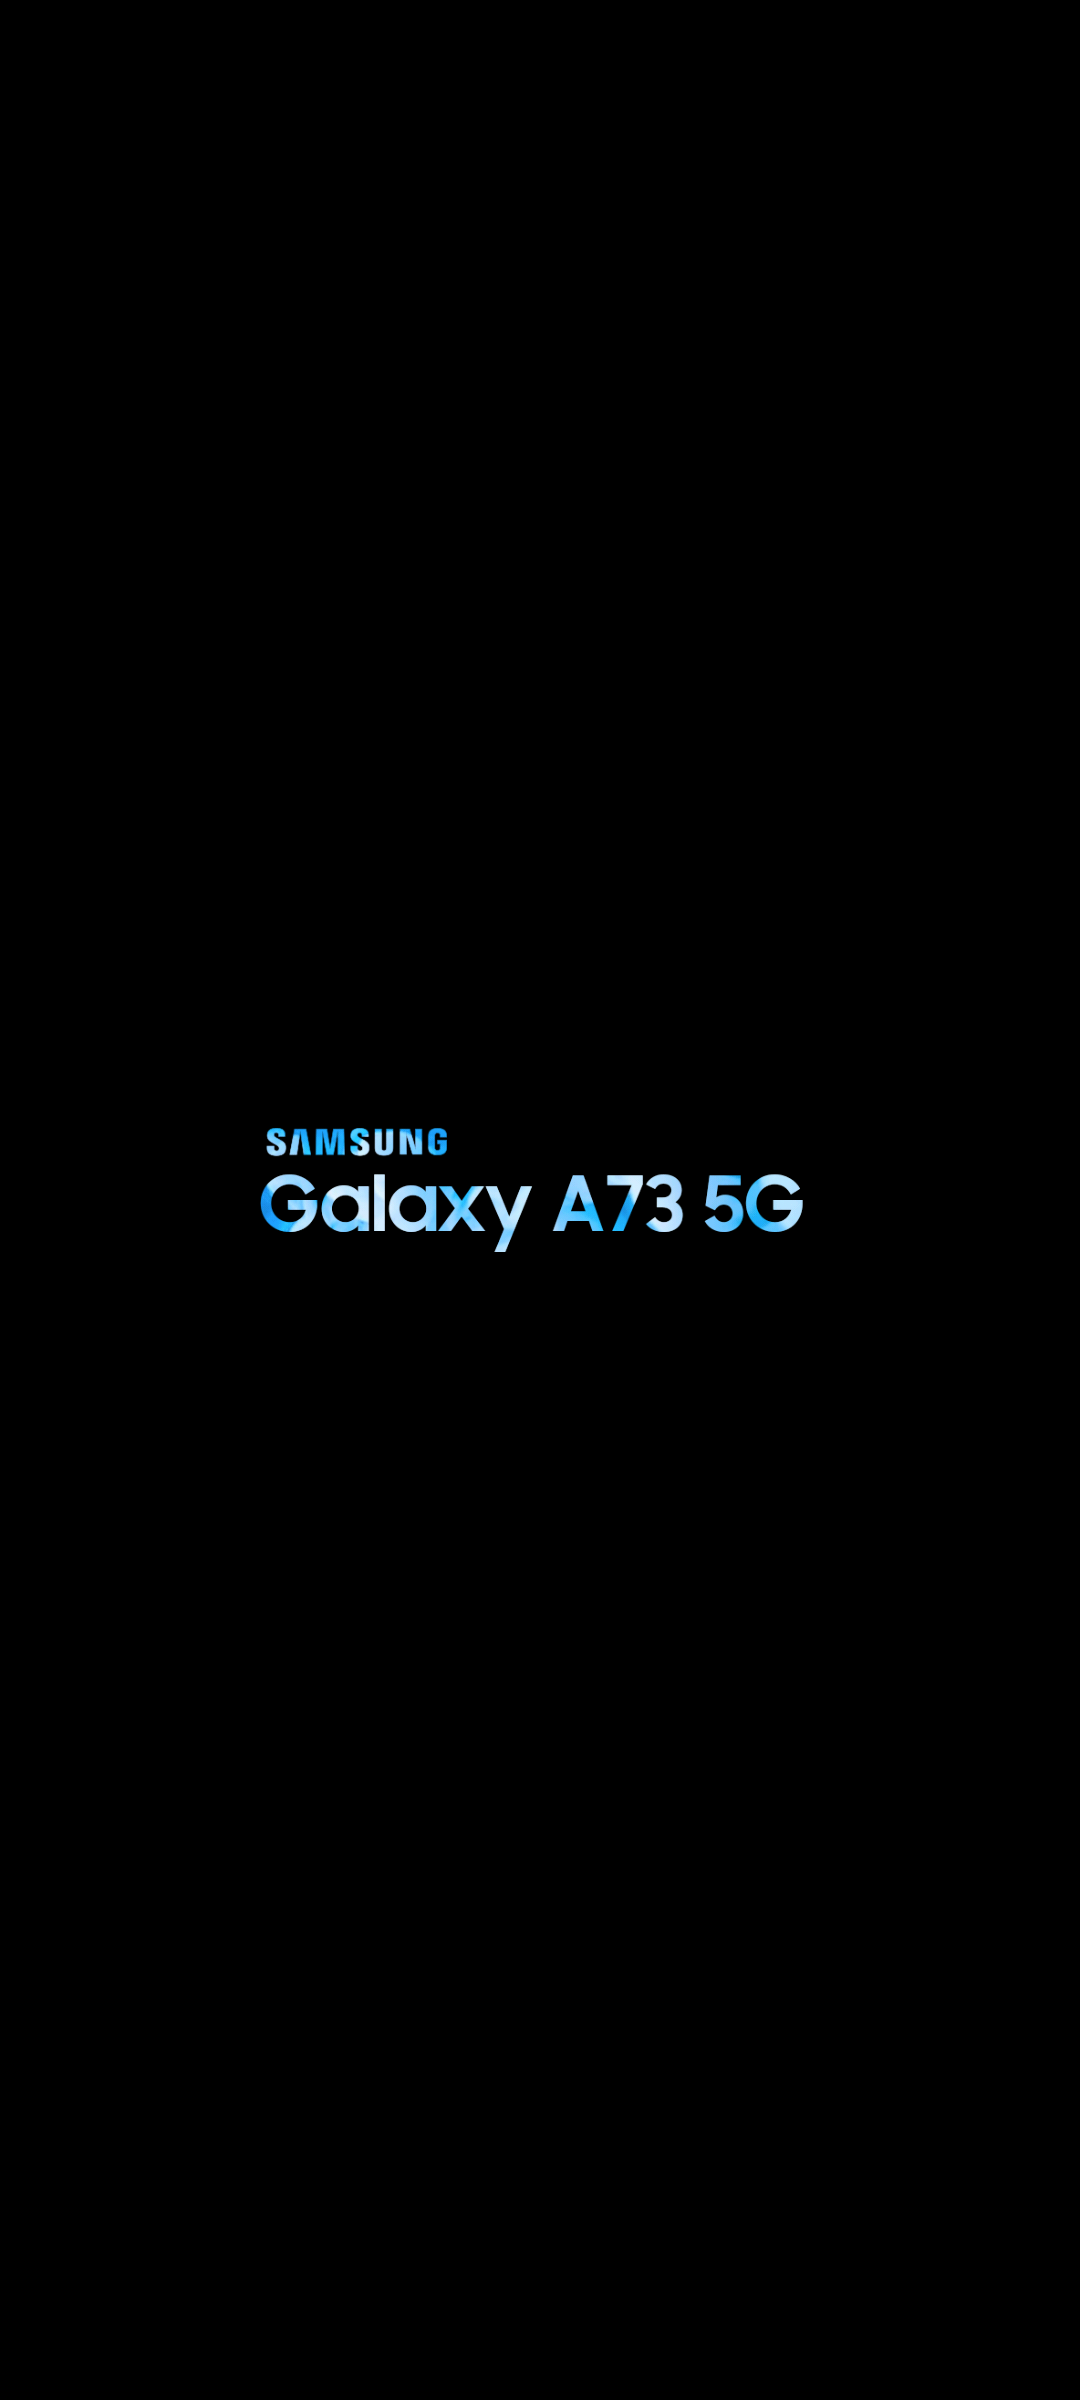 Hãy tải ngay hình nền Samsung A73 5G đẹp nhất về thiết bị của bạn thông qua ứng dụng Samsung Members. Bộ sưu tập rộng lớn của hình nền với độ phân giải sắc nét sẽ đem đến cho bạn những trải nghiệm tuyệt vời nhất. Khám phá ngay nào!